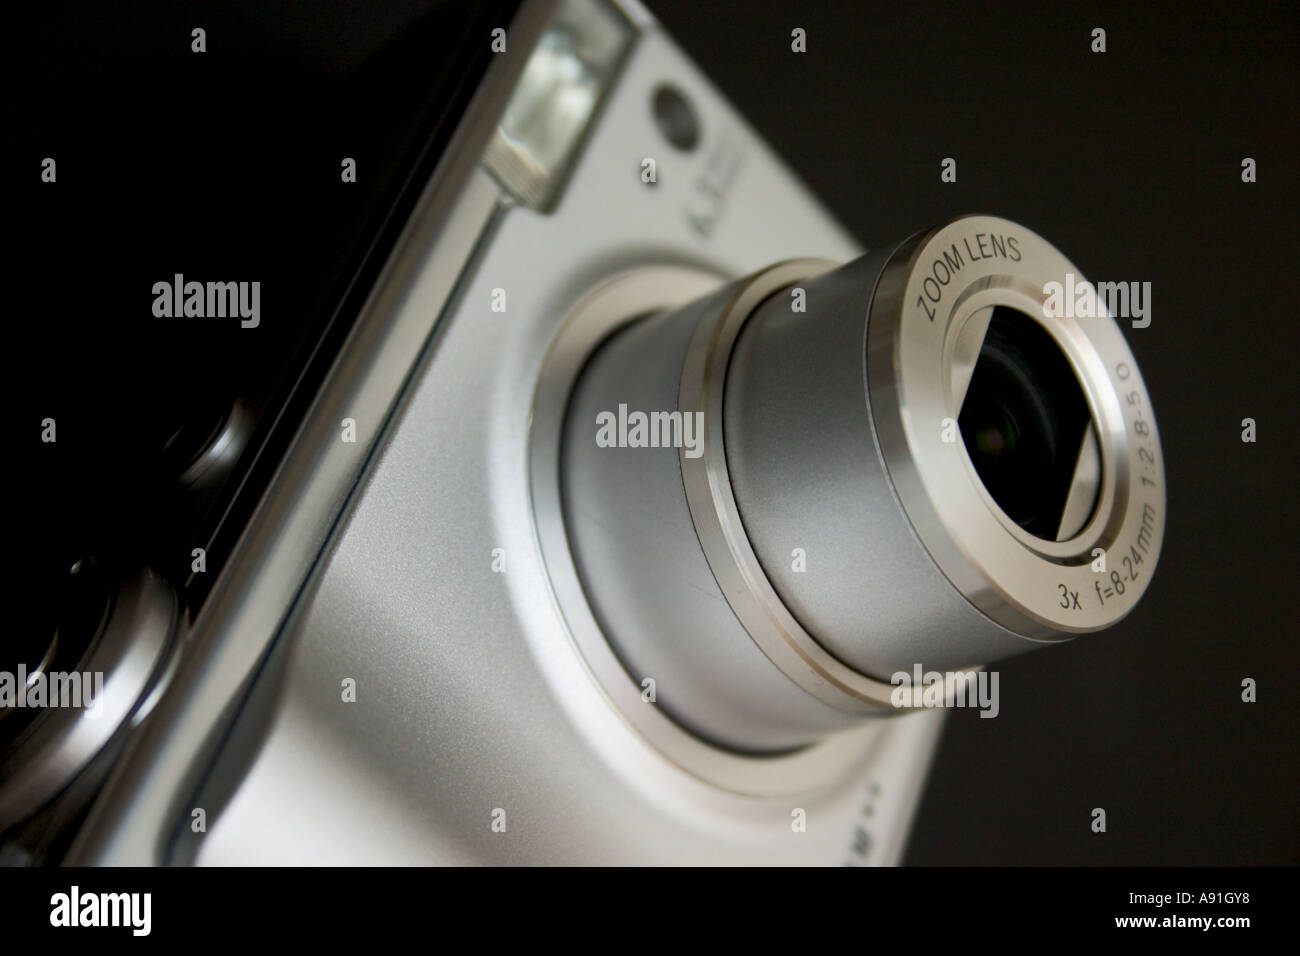 Fotocamera digitale con zoom ottico Foto Stock